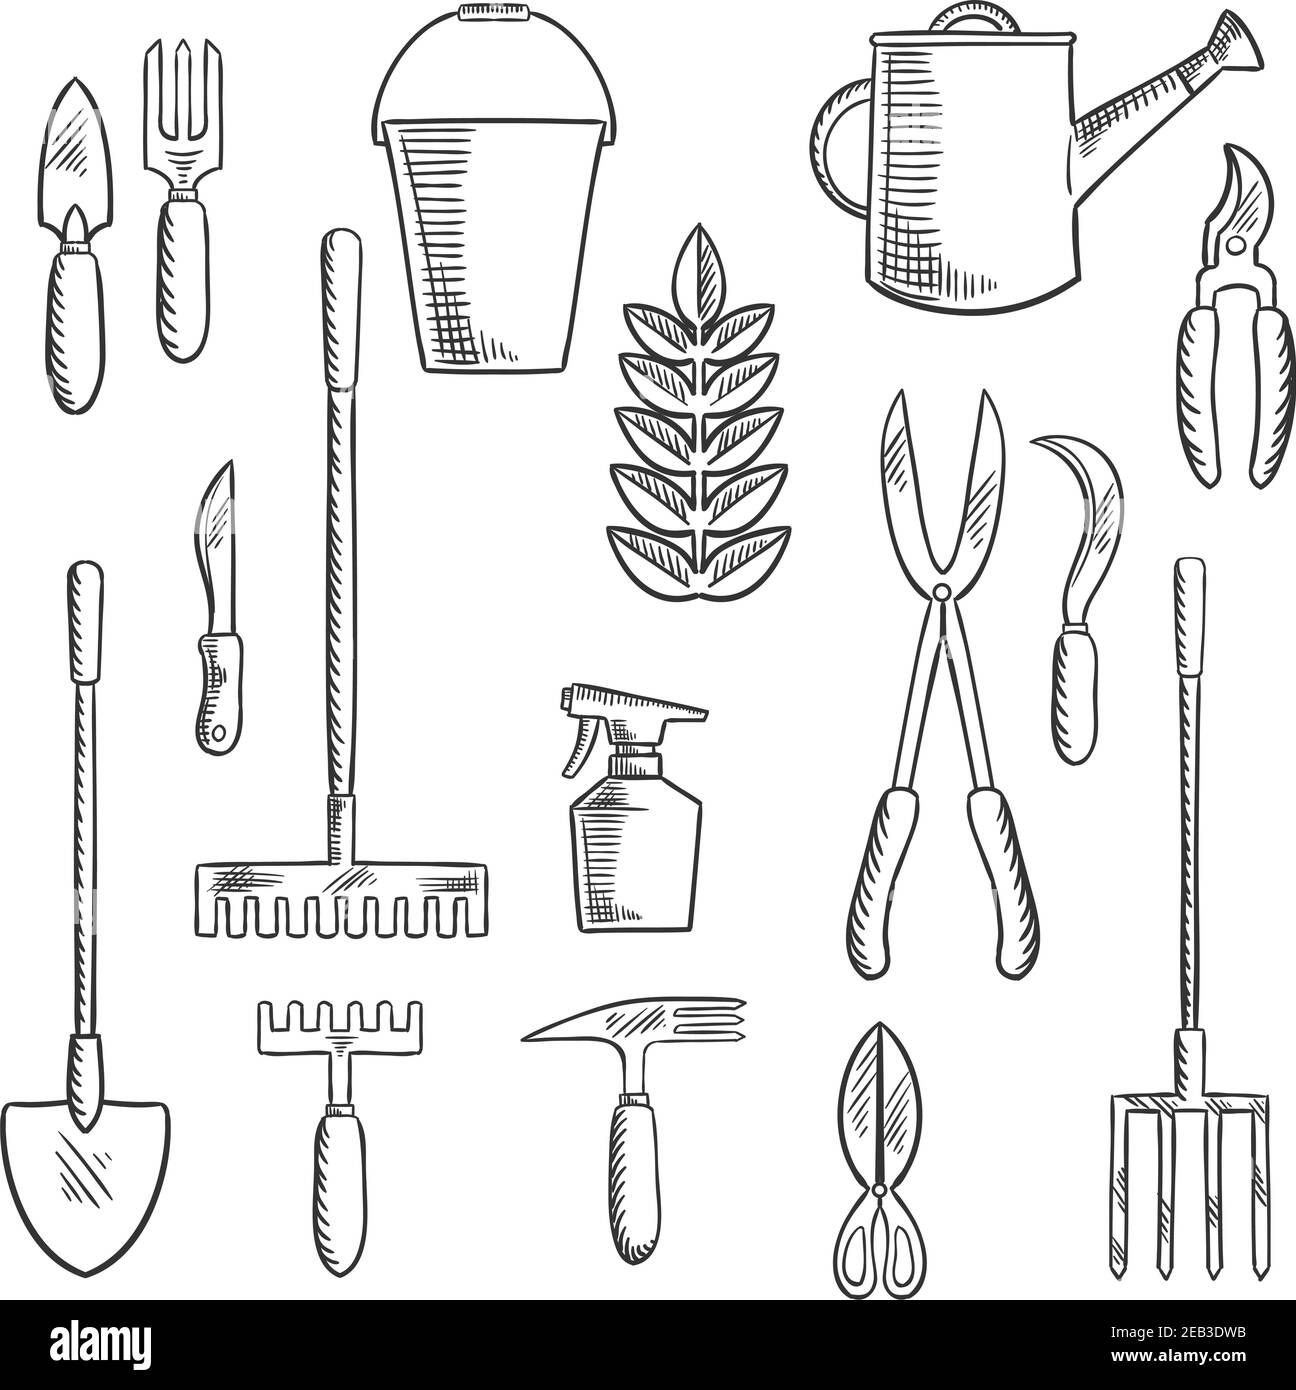 Handgartenwerkzeuge skizzierte Ikonen mit Kelle, Messer, Gabel, Schere, Rechen, Schere, Sprühflasche, Jäten Hacke, Sichel und Gießkanne. Skizzenstil Stock Vektor